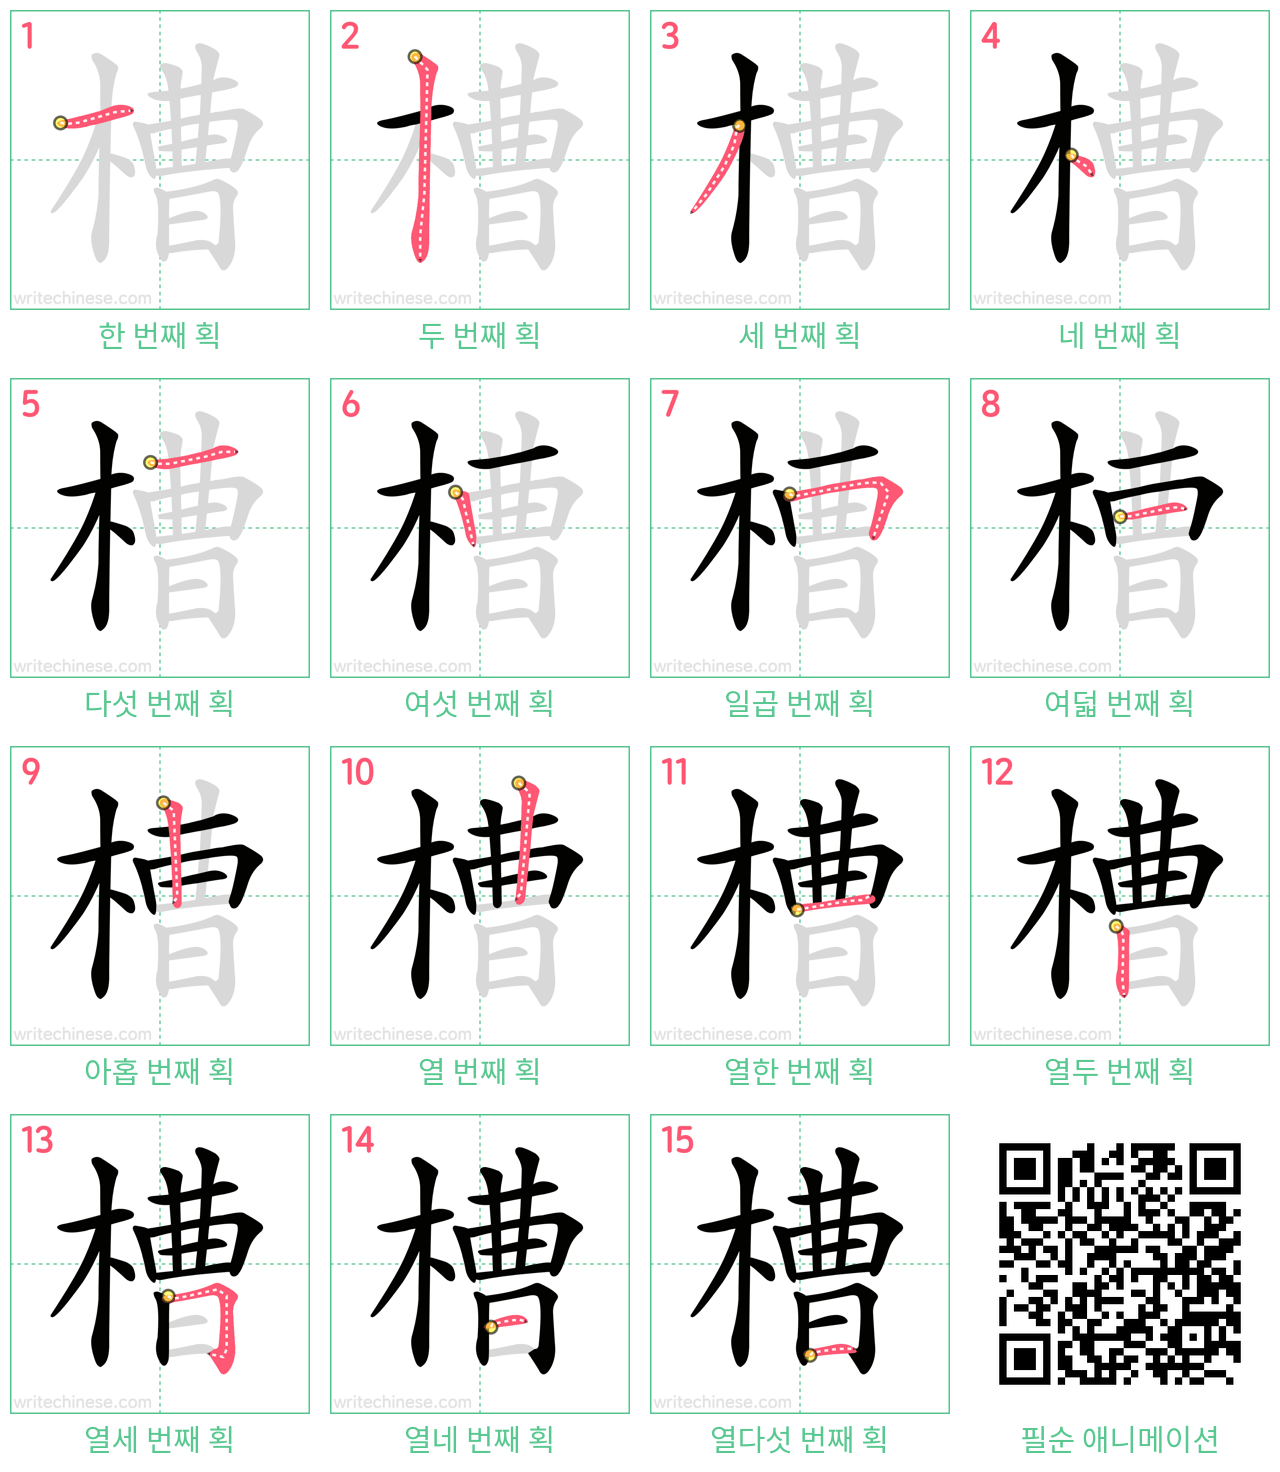 槽 step-by-step stroke order diagrams